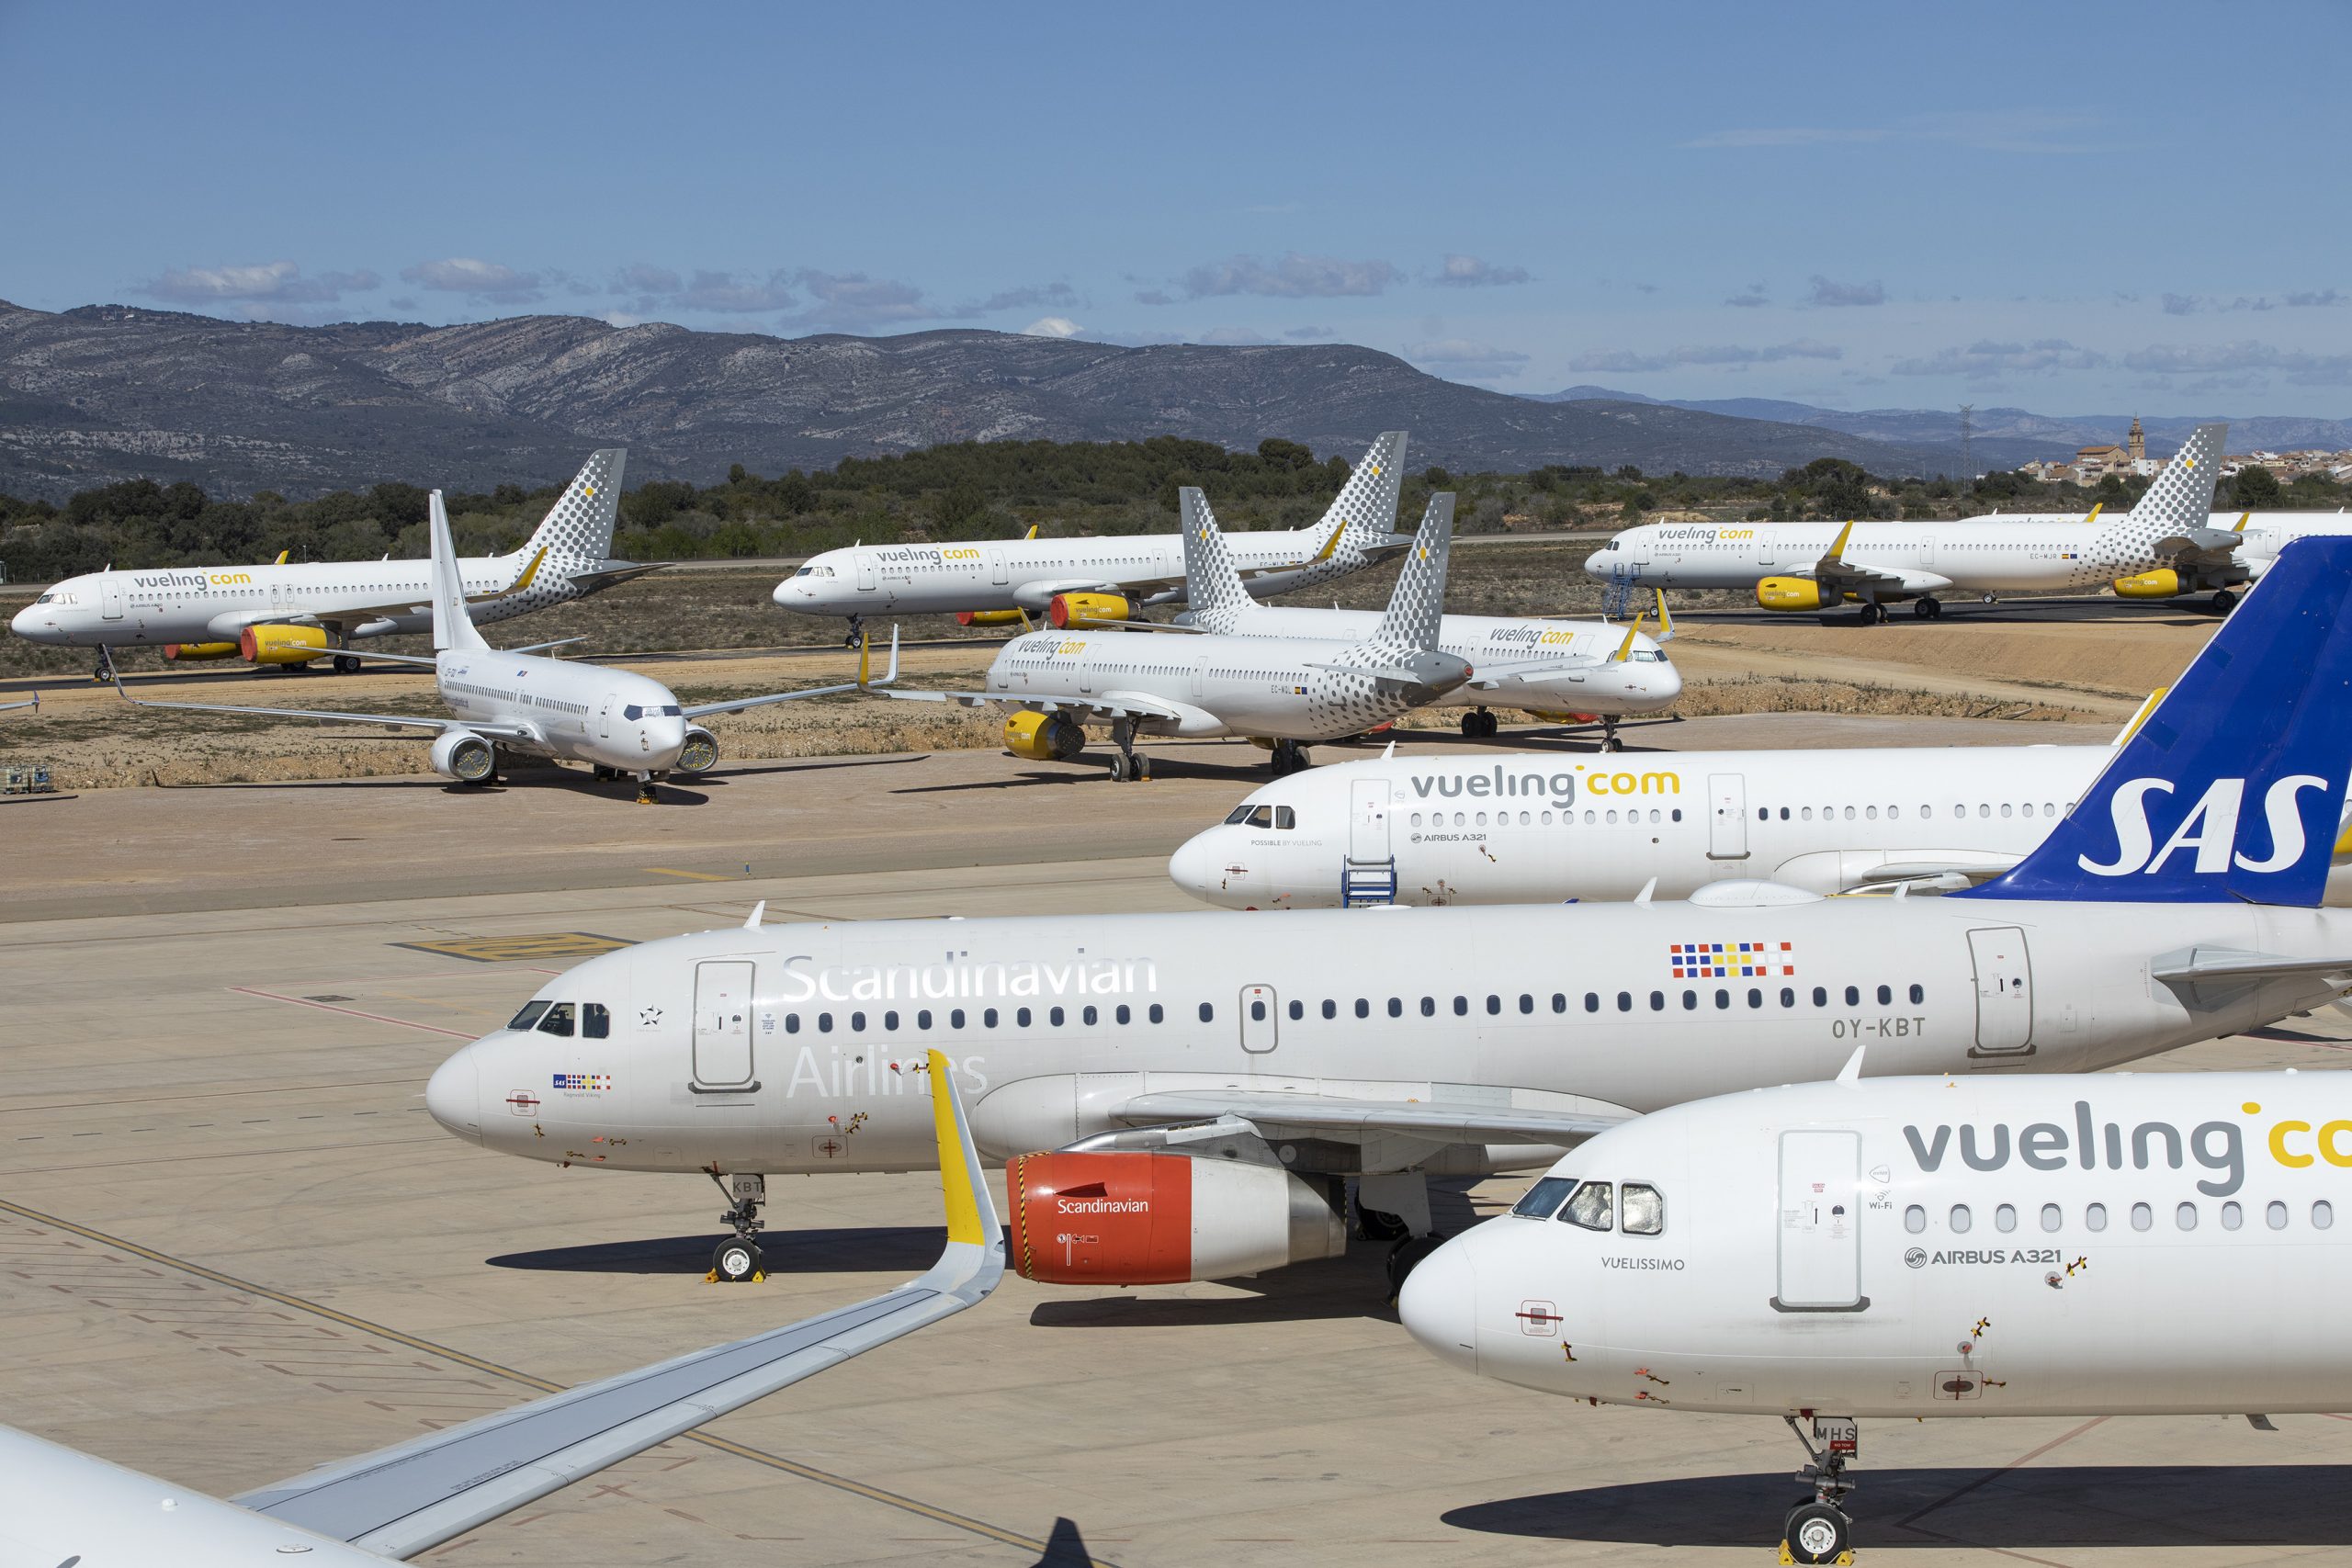 El aeropuerto de Castellón refuerza su actividad con la llegada de otros 40 aviones para su preservación y mantenimiento en invierno por parte de la empresa Brok-air Aviation Group